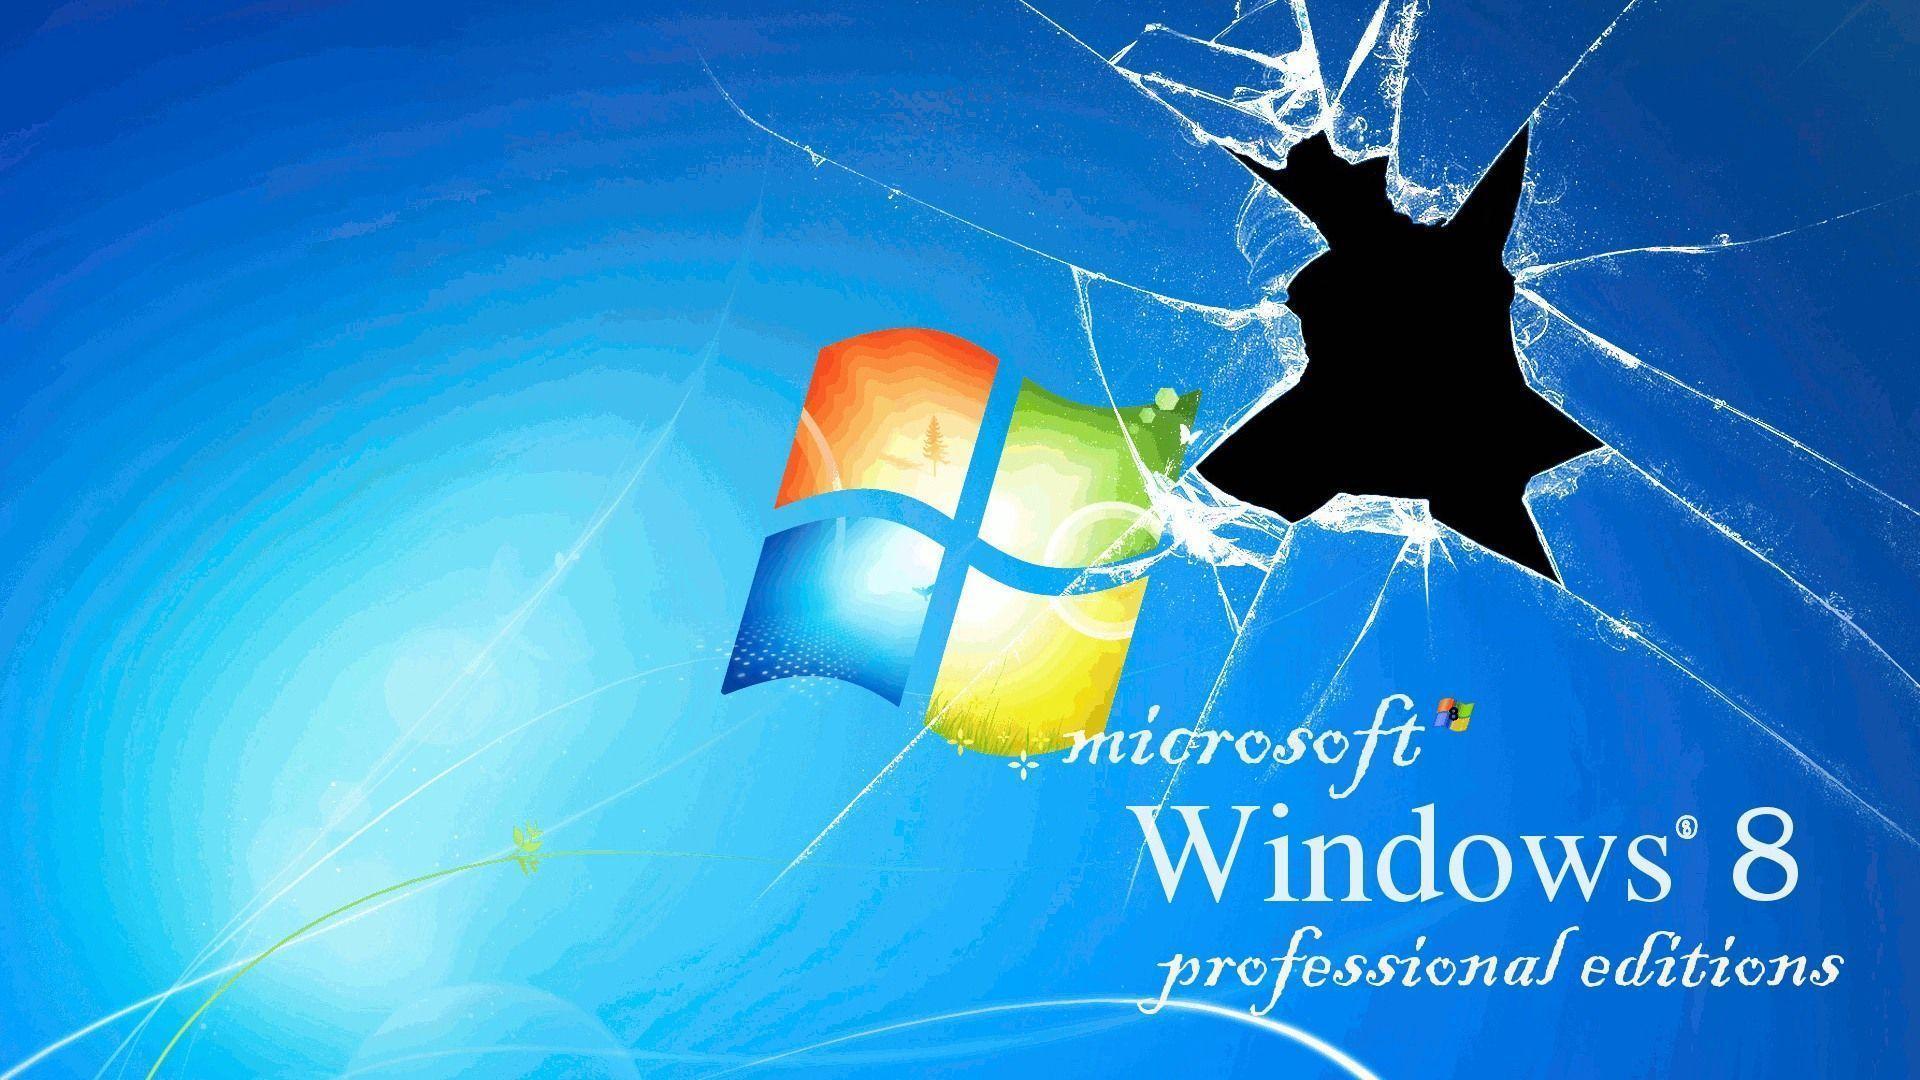 Windows 8 theme wallpaper (2) Wallpaper Download